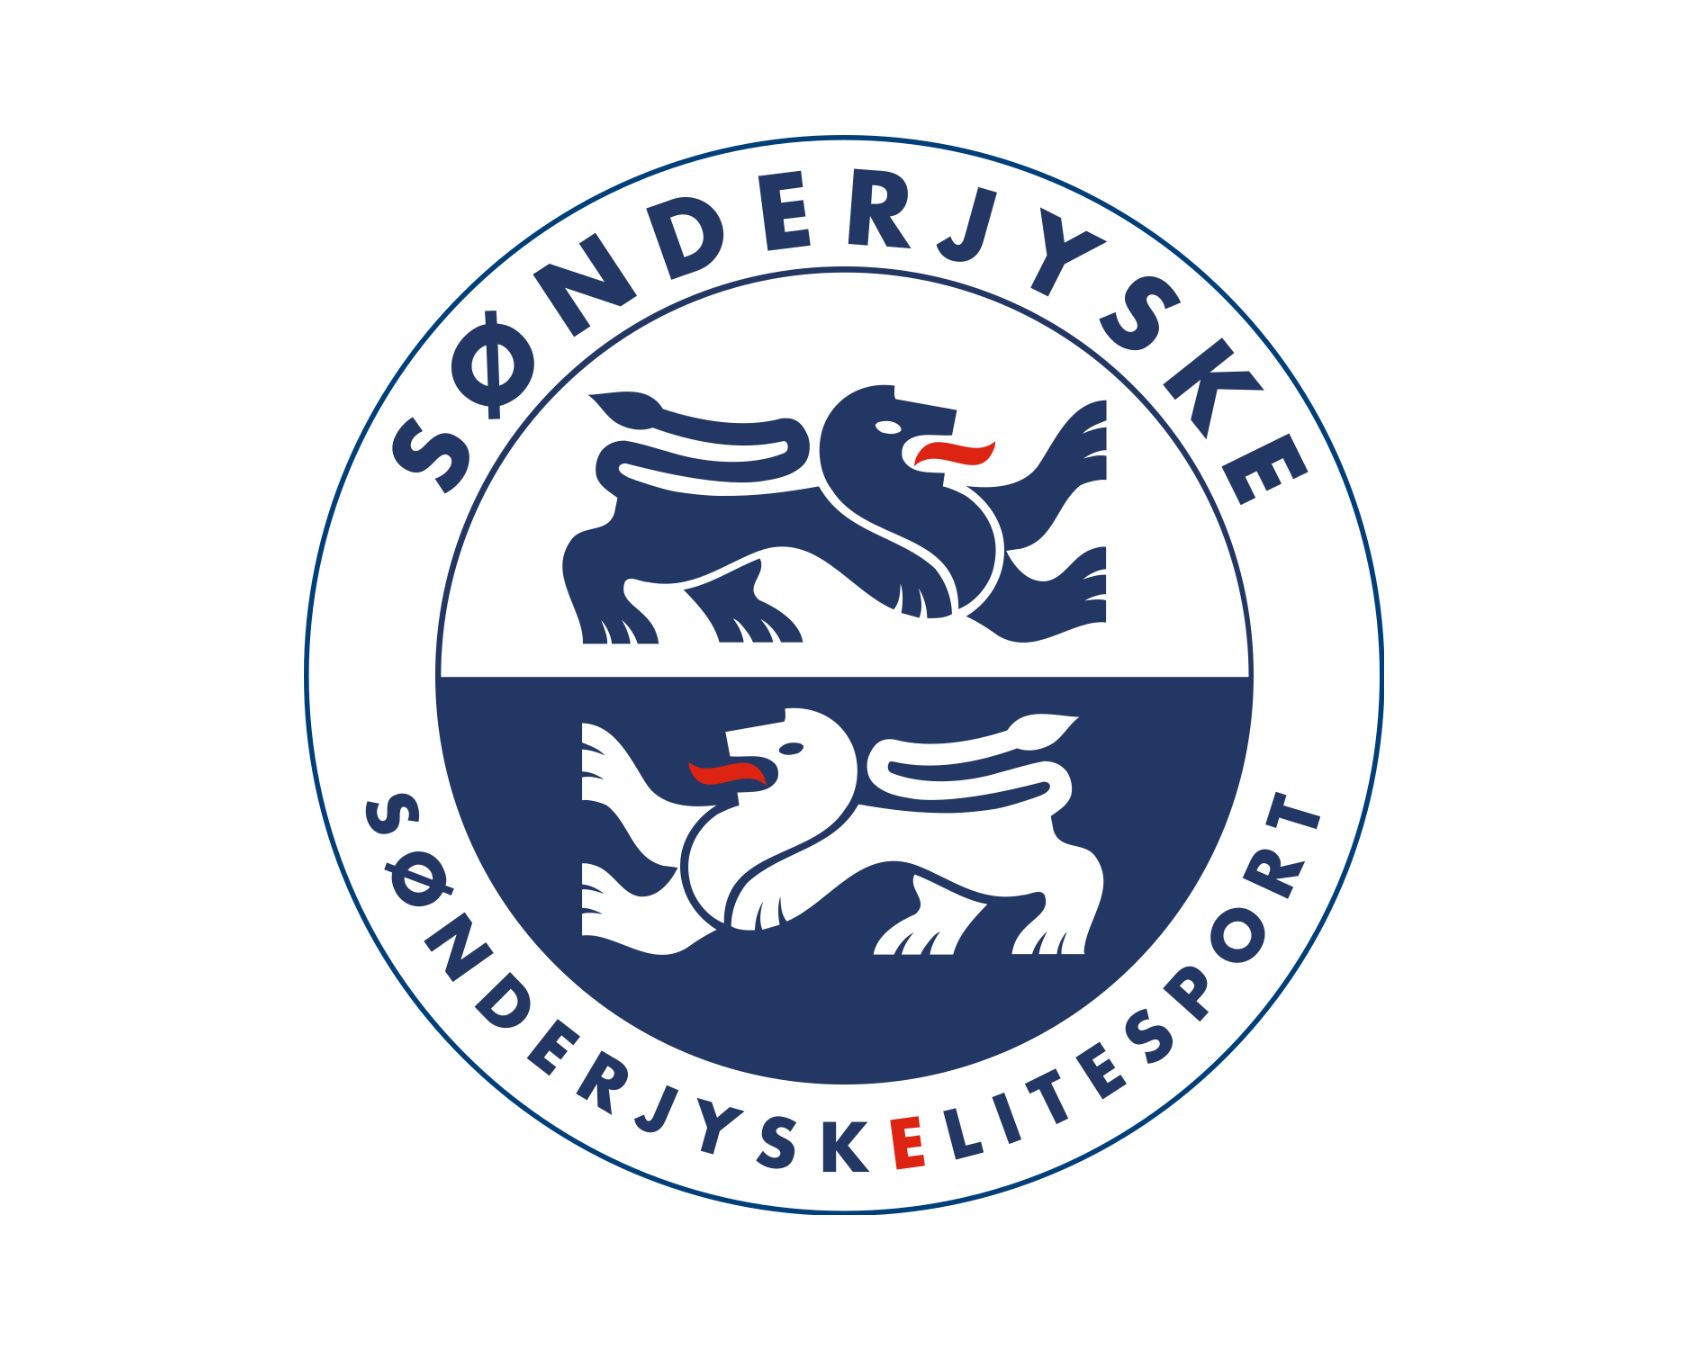 sonderjyske-fodbold-15-football-club-facts